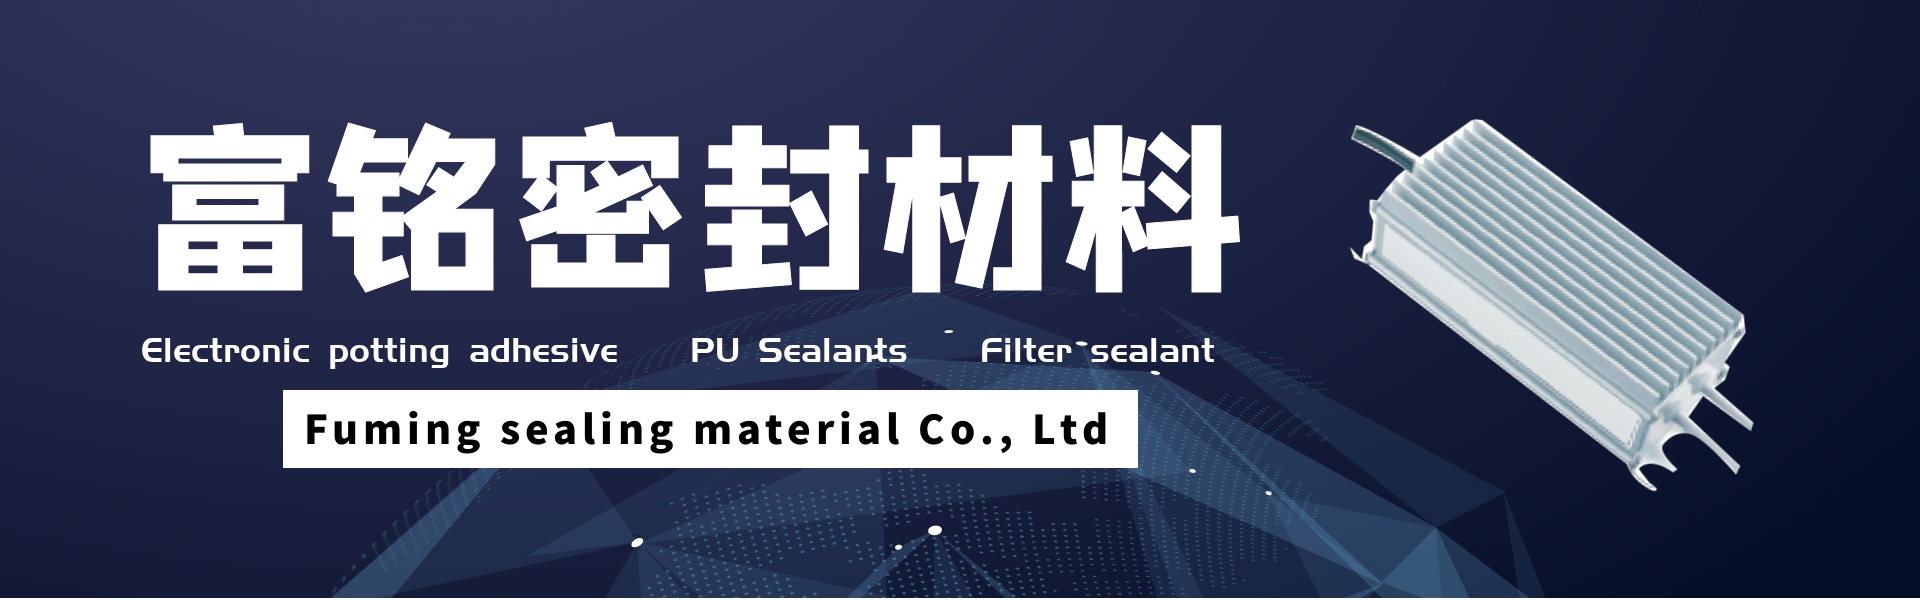 adesivo de envasamento eletrônico, selantes pu, selante de filtro,Dongguan fuming sealing material Co., Ltd